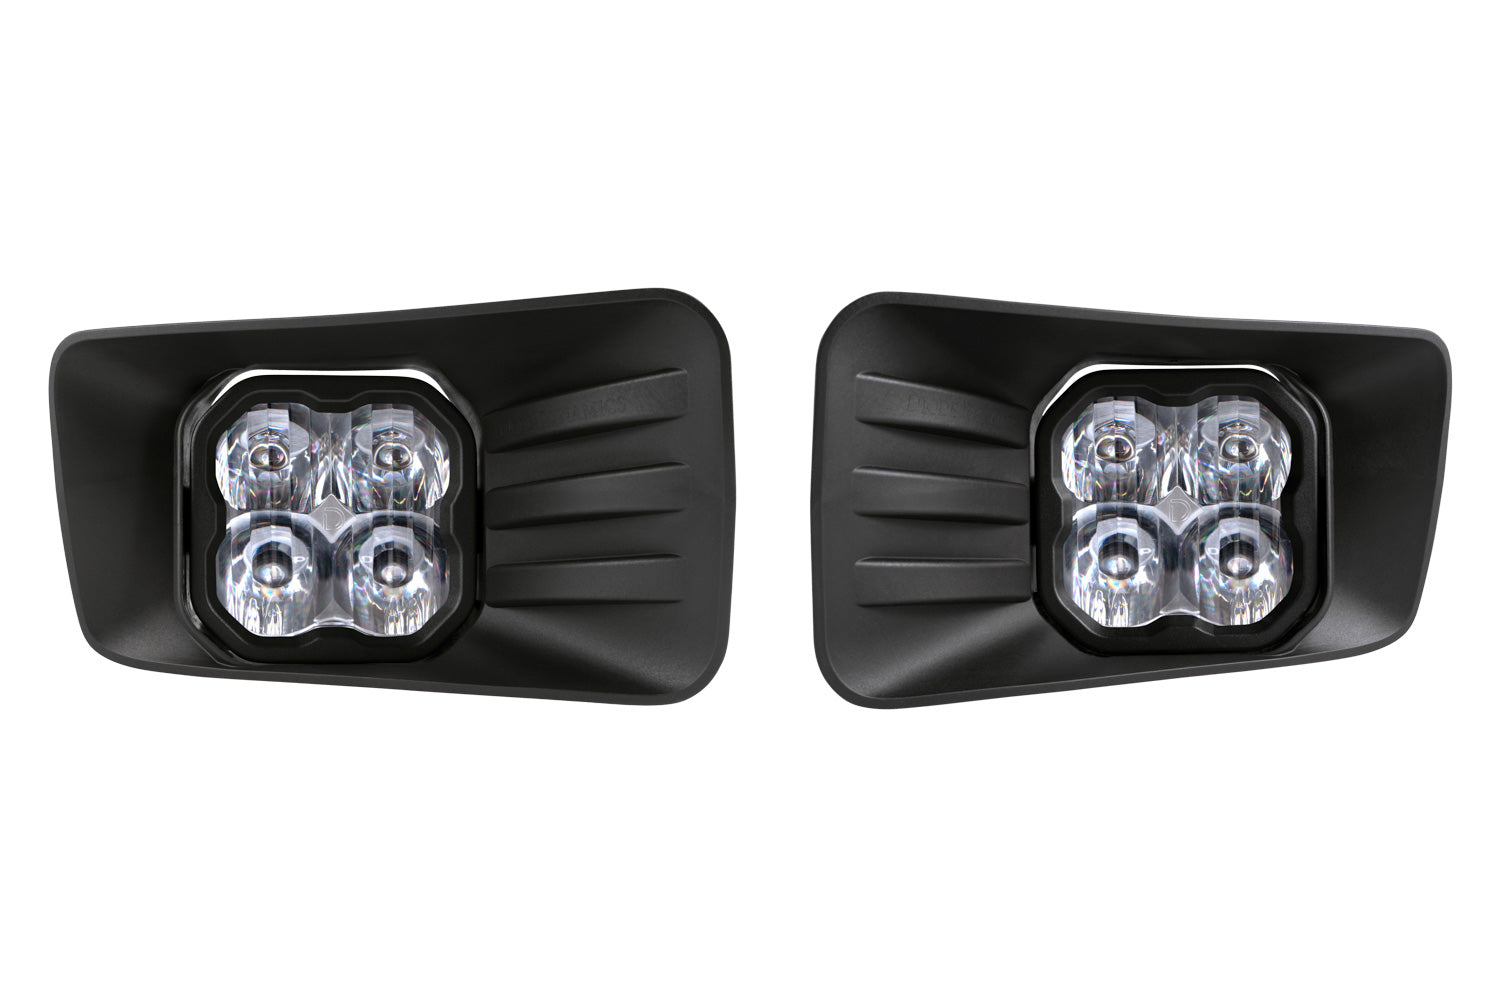 SS3 LED Fog Light Kit for 2007-2015 Chevrolet Silverado, White SAE Fog Sport with Backlight Diode Dynamics